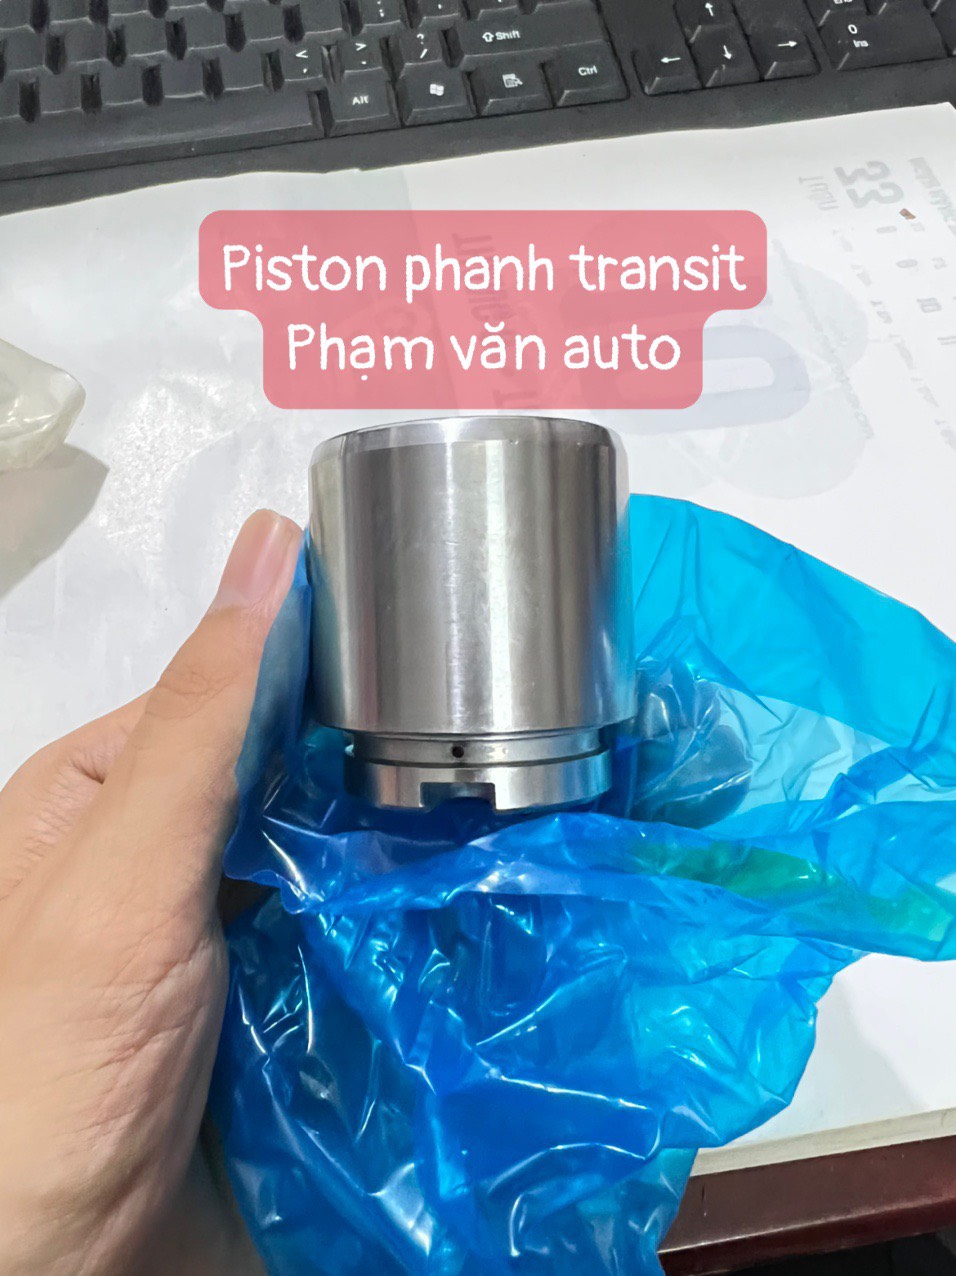 Piston Phanh Trước Và Sau Ford Transit Chính Hãng Giá Rẻ Phạm Văn Auto